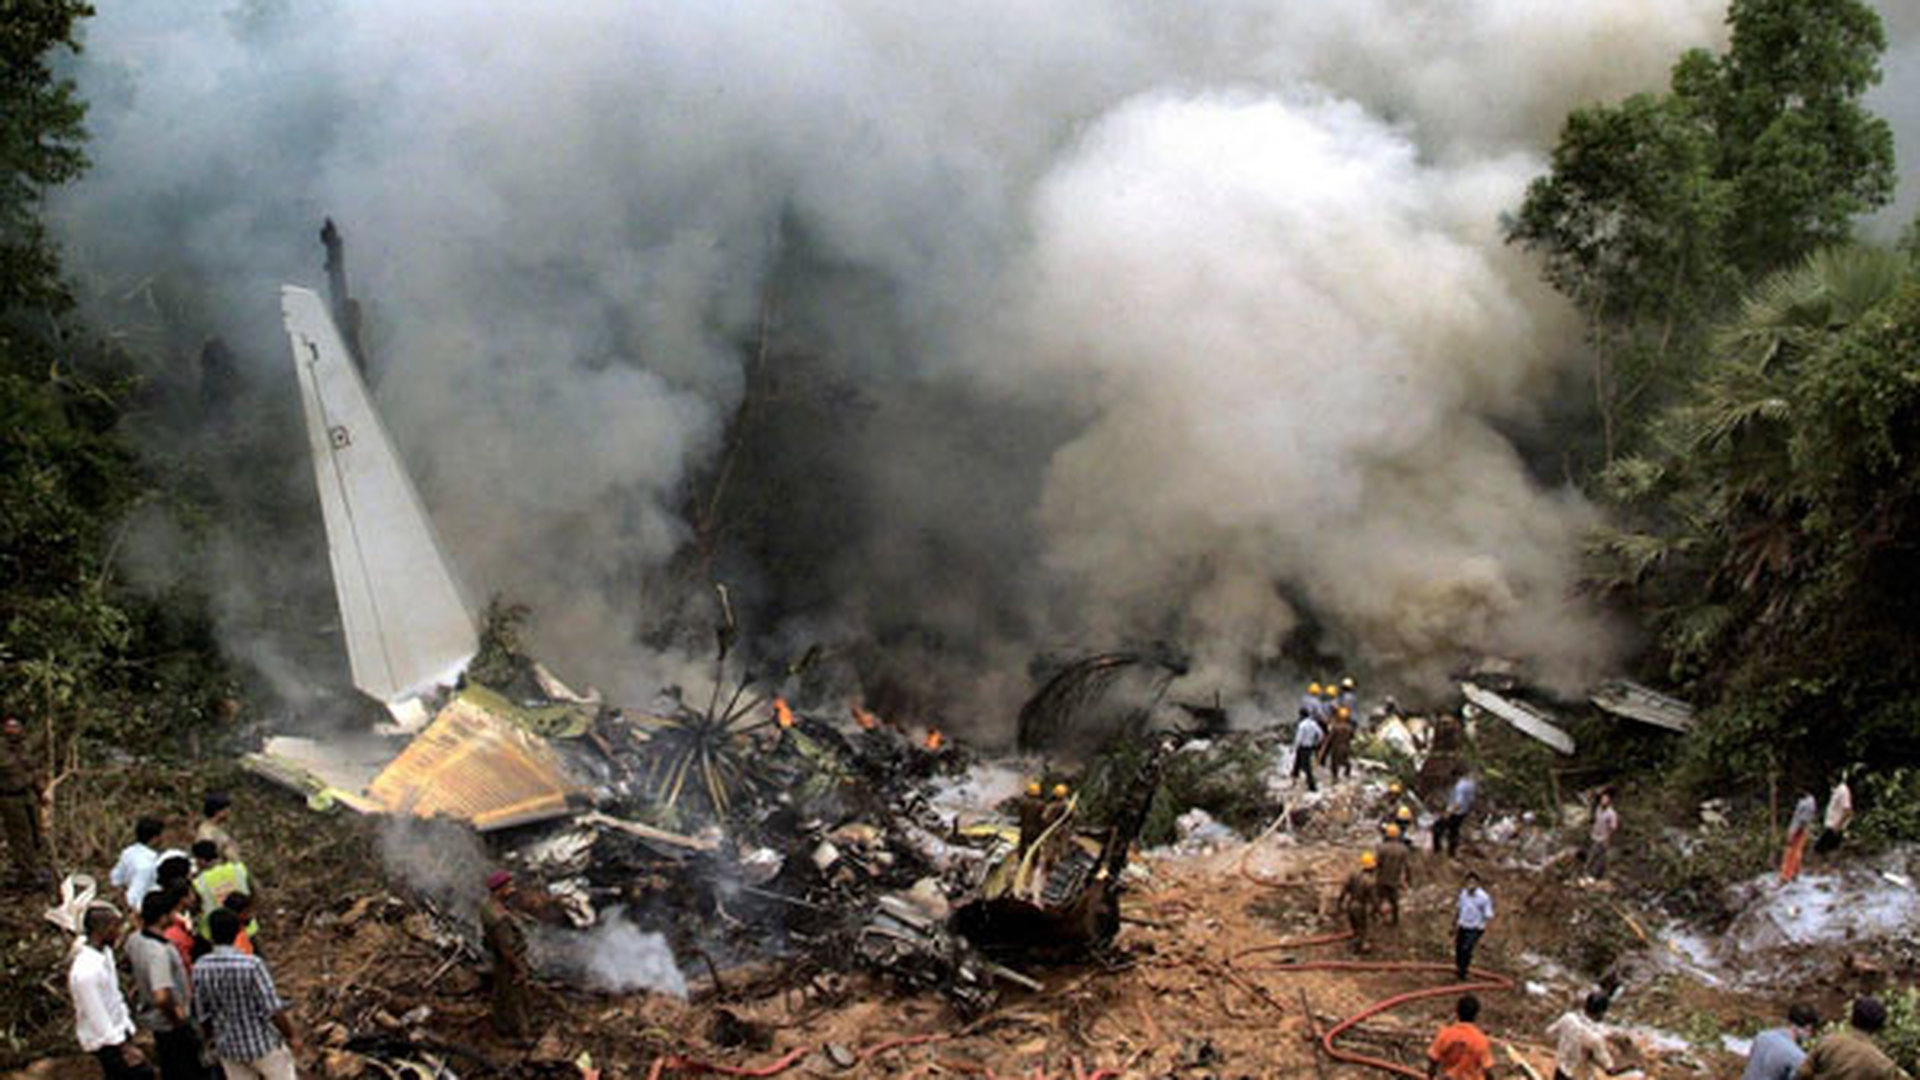 Самая большая авиакатастрофа. Крушение Боинг 747 1987 Маврикия. Авиакатастрофы Боинга 737-800 Air India. АИР Индия авиакатастрофа. Boeing 747 Air India катастрофа.